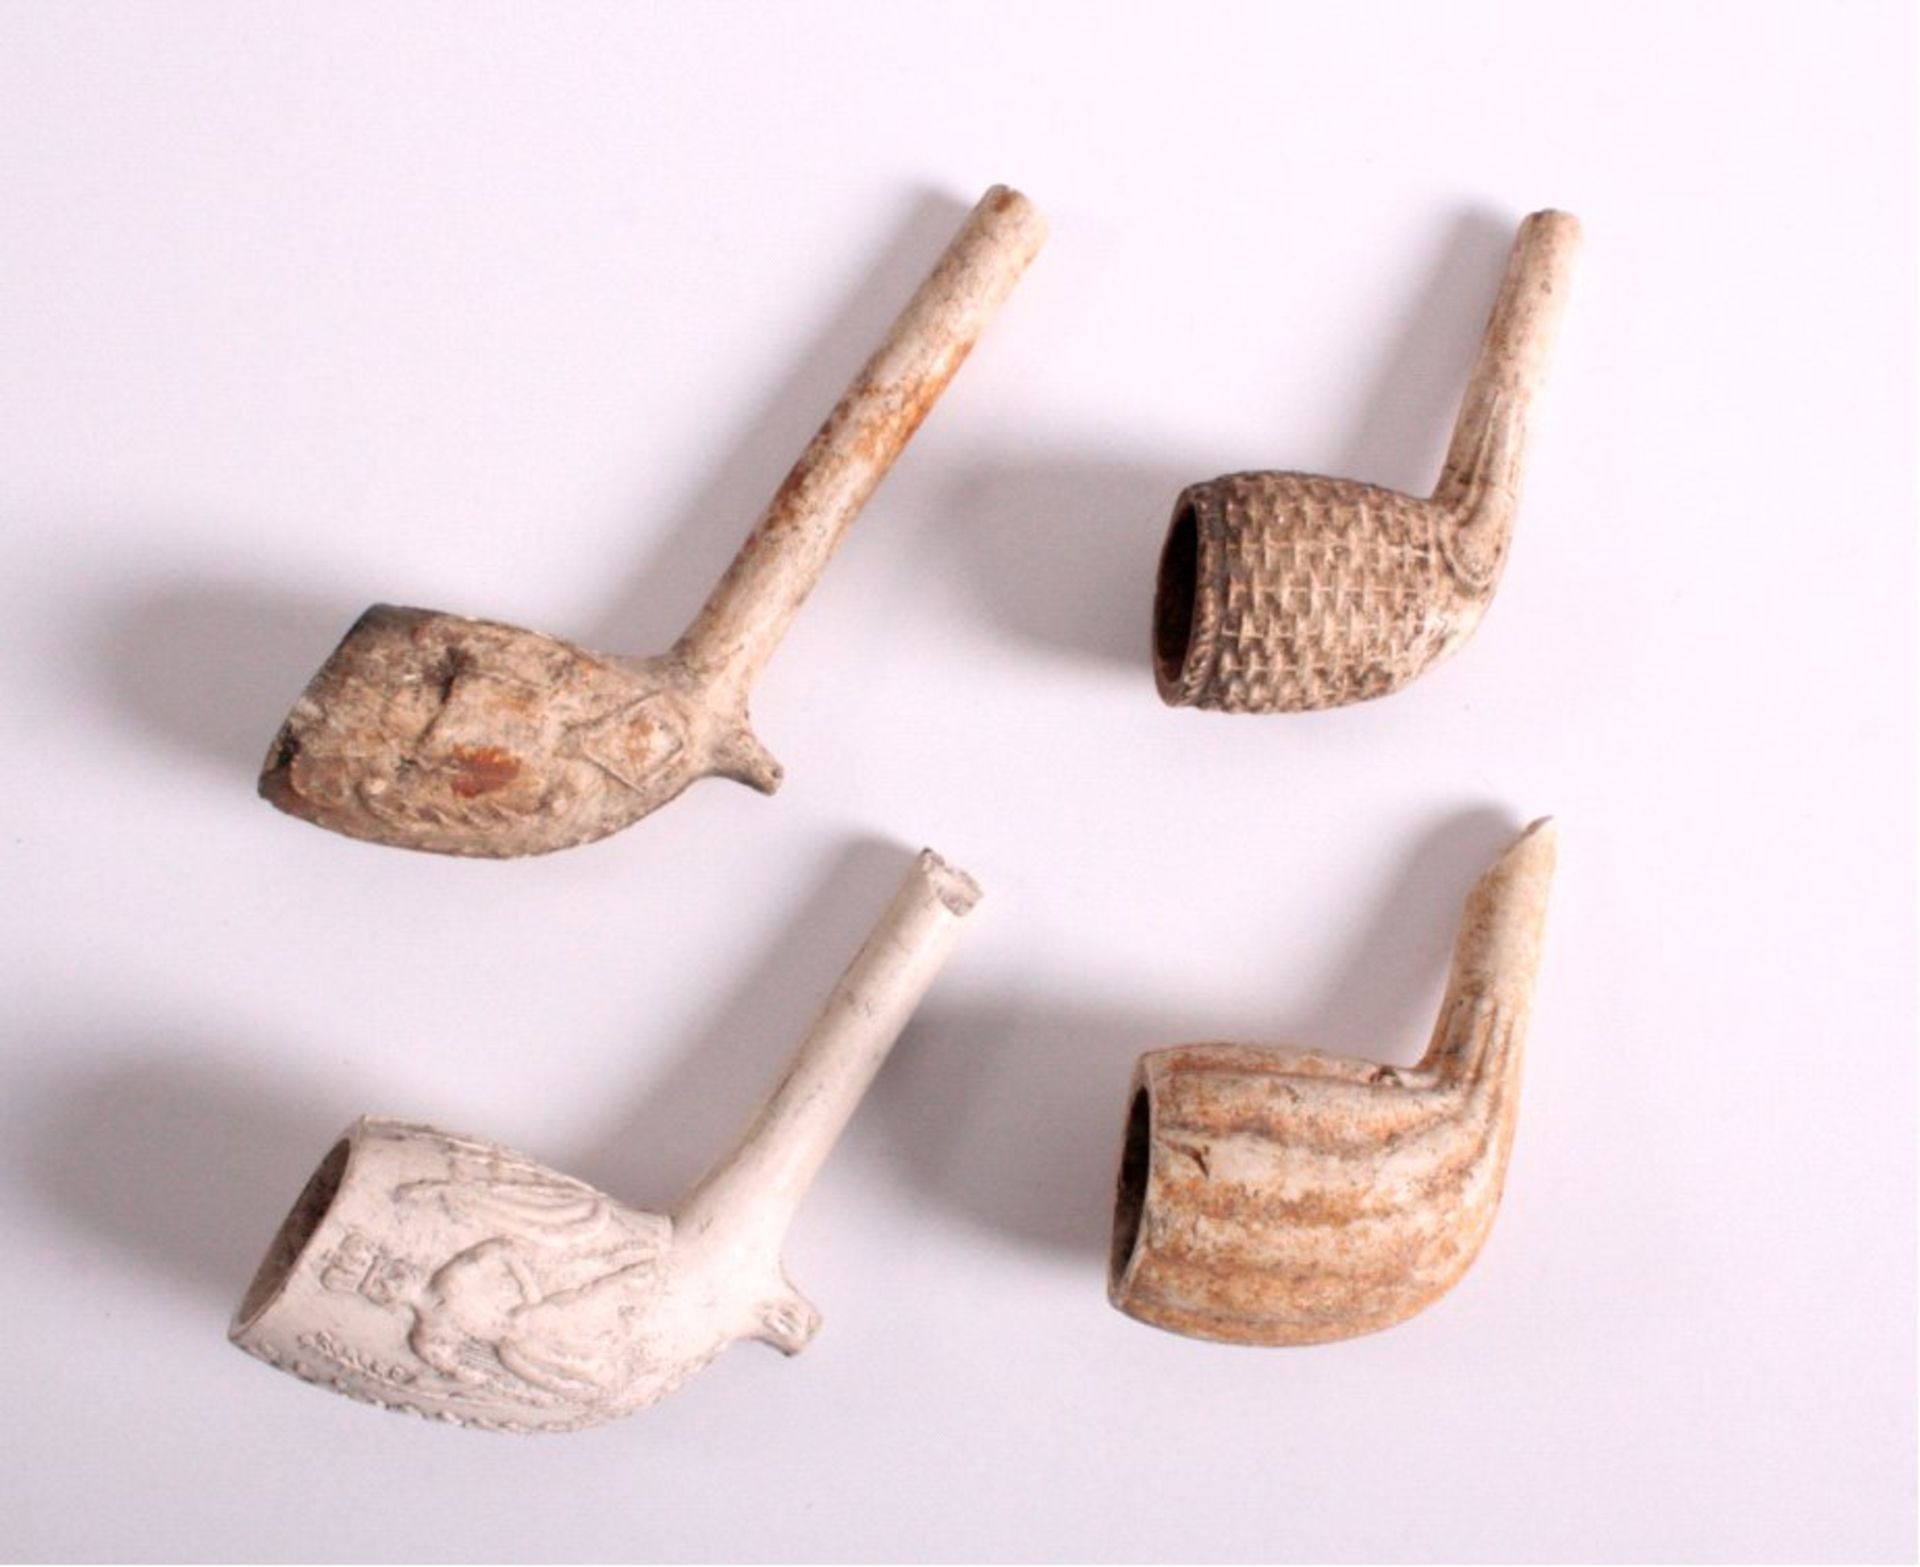 4 antike Pfeifenköpfeaus Ton gefertigt, dekoriert mit Rillen und Personen, ca.L-6 und 9 cm

Dieses